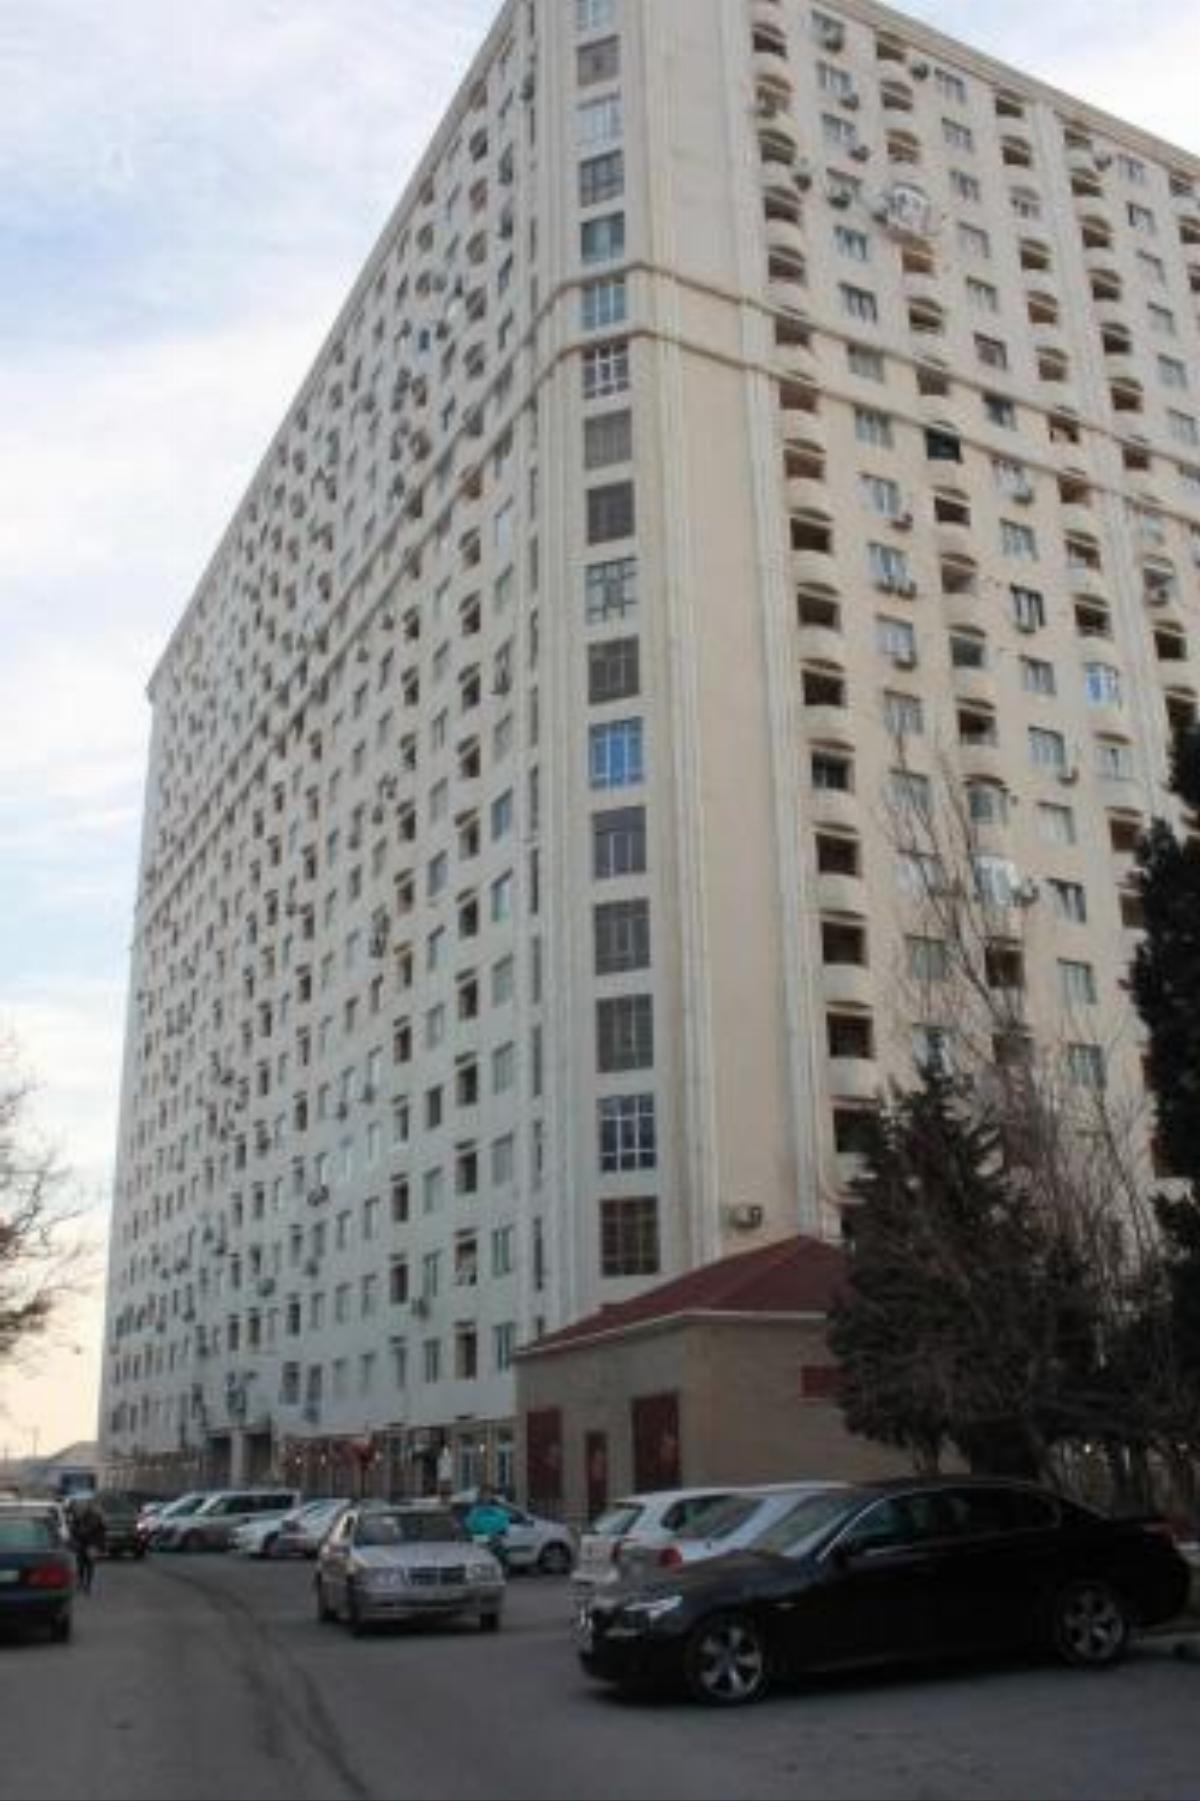 Apartments on Aliyar Aliyev Street Hotel Baku Azerbaijan